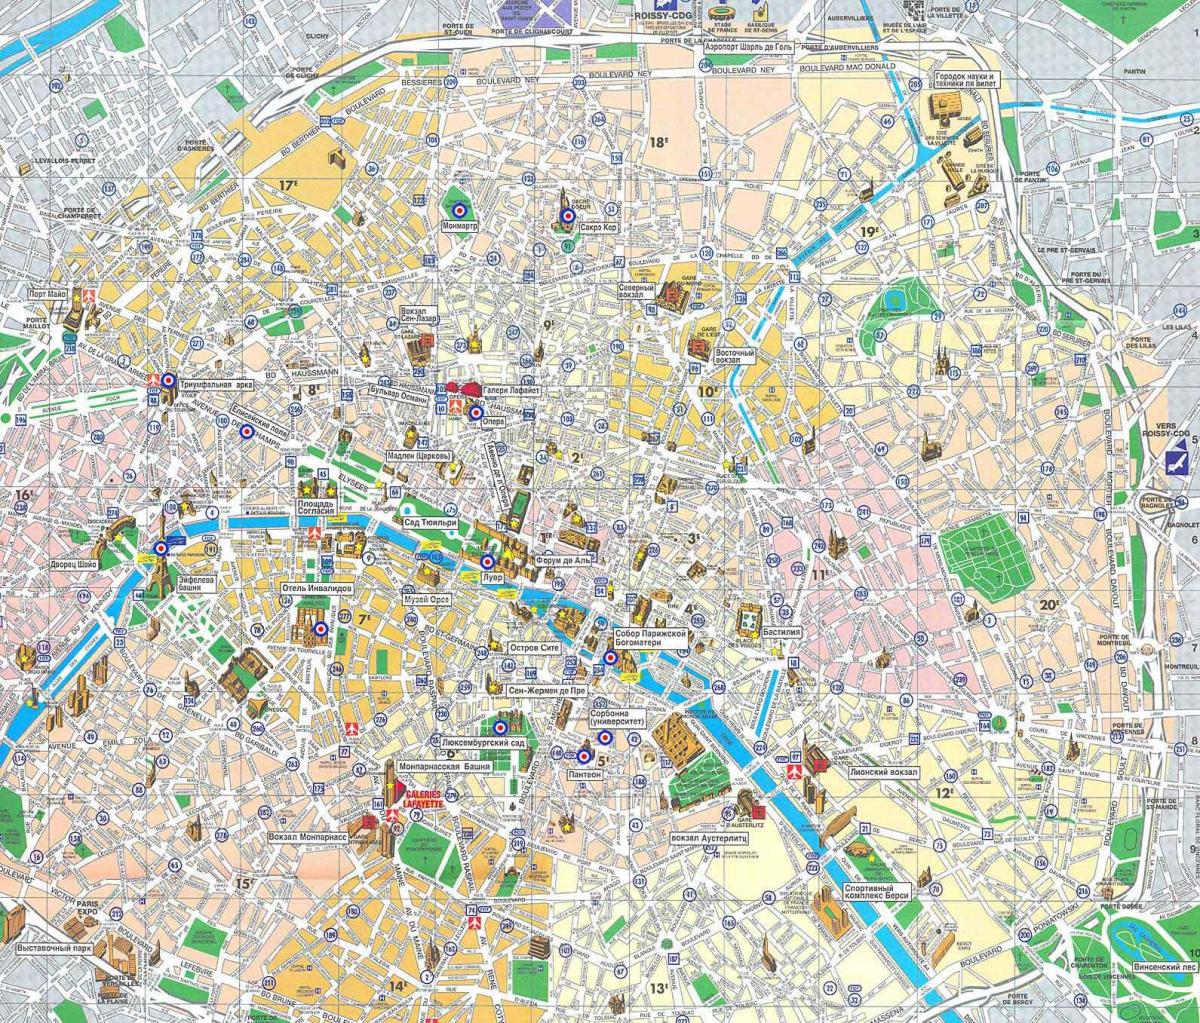 Mappa della città di Parigi, Francia